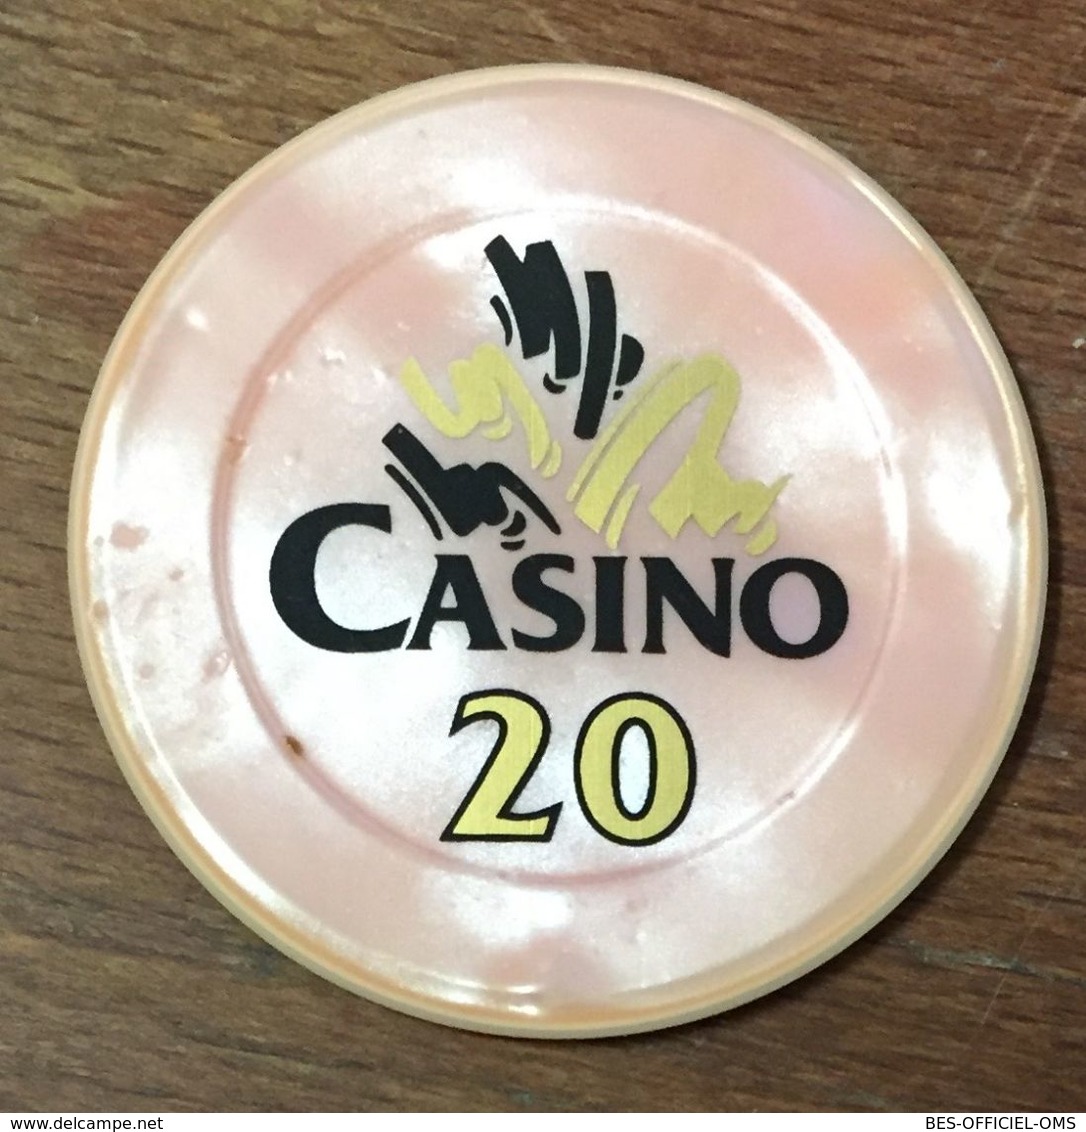 58 POUGUES LES EAUX CASINO DU NIVERNAIS JETON DE 20 FRANCS N°00477 JETON CHIP TOKENS COINS GAMING MONNAIE MEDAILLE - Casino